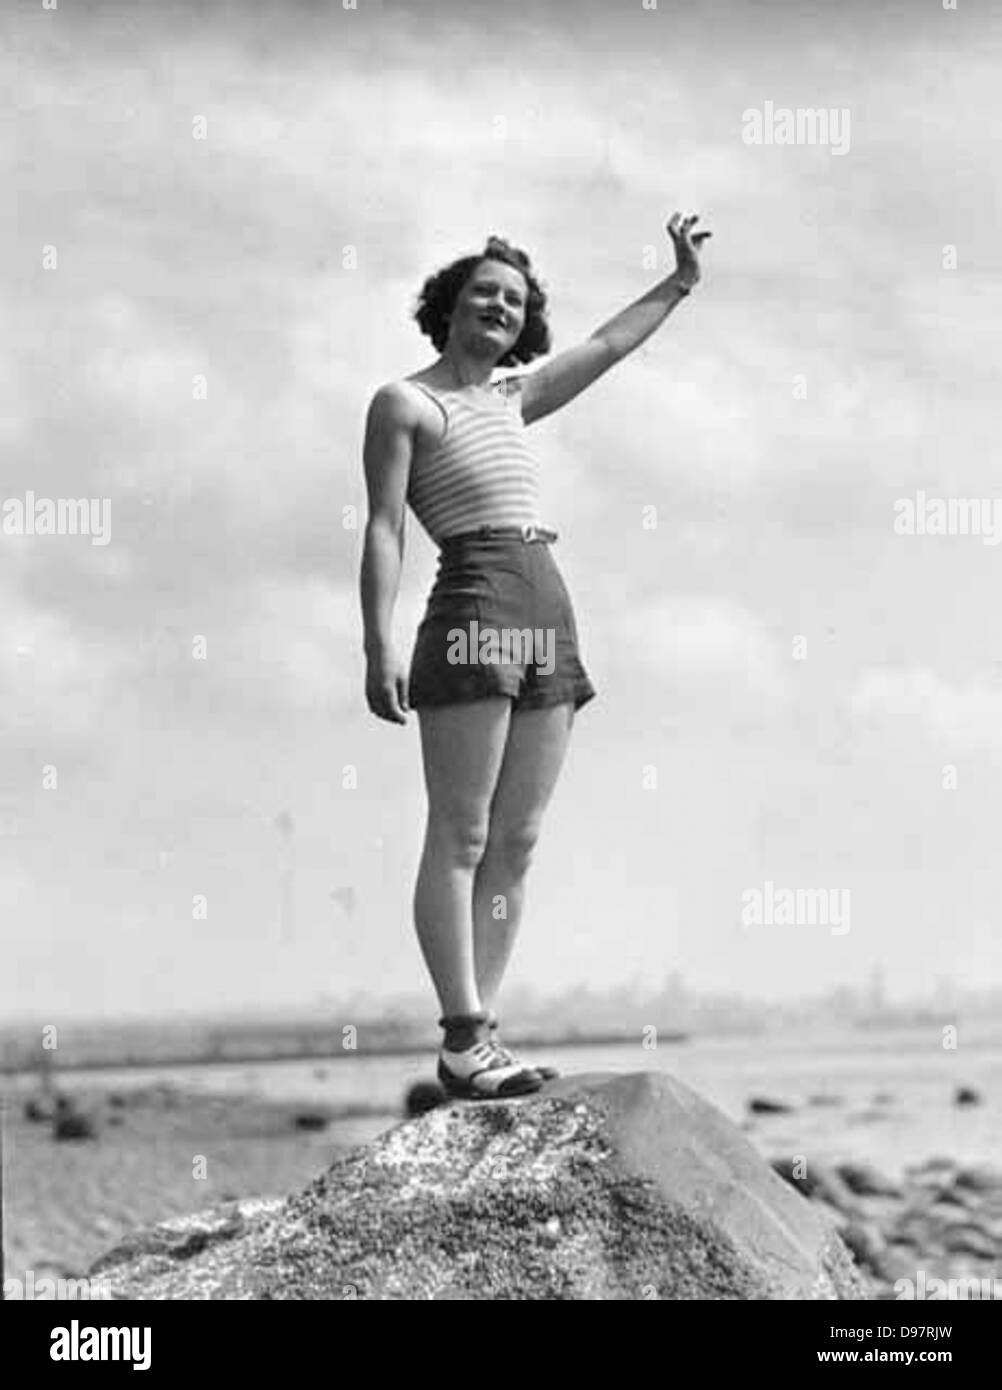 Donna in costume da bagno sventolare mentre in piedi su una grande roccia su una spiaggia, probabilmente stato di Washington Foto Stock